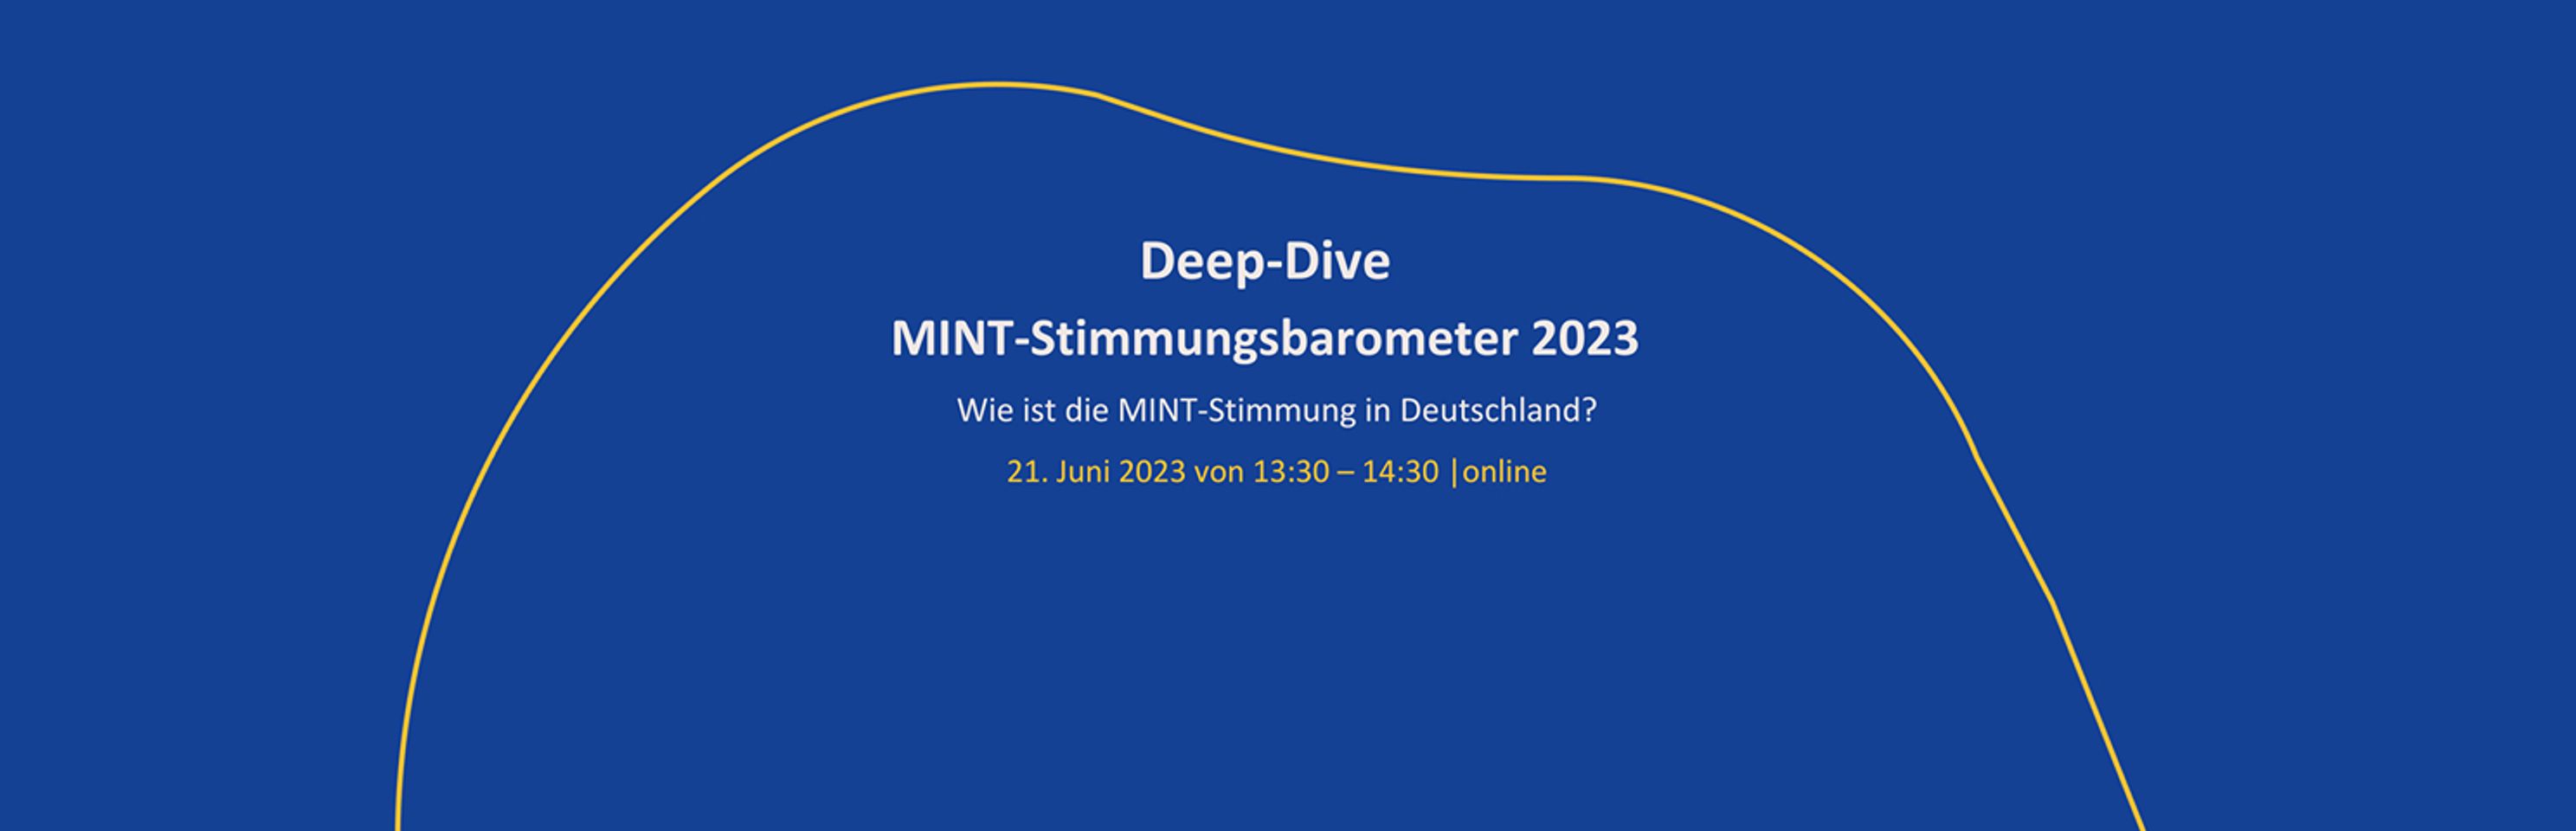 Deep Dive MINT-Stimmungsbarometer